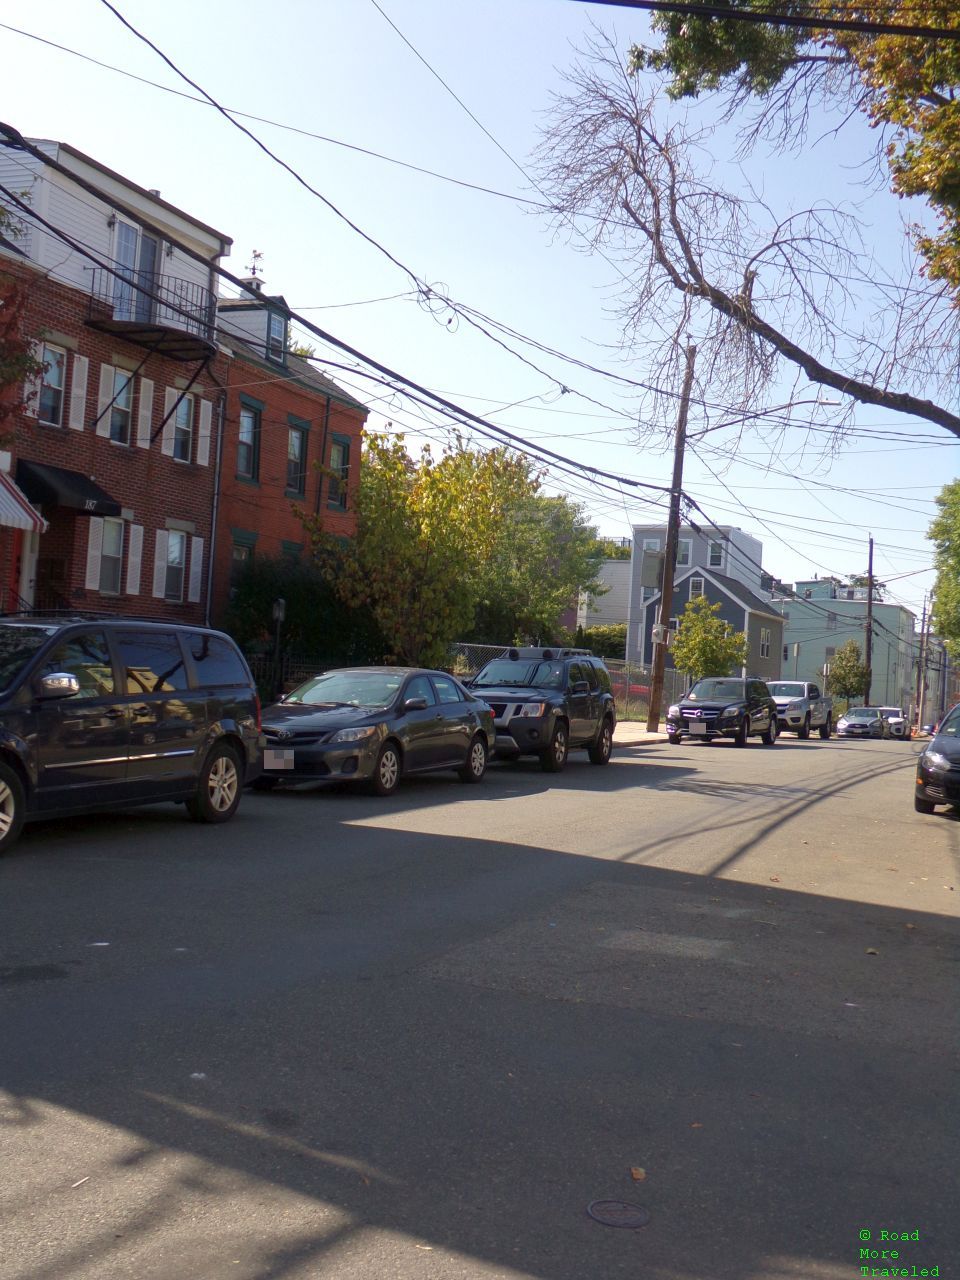 Residential neighborhood, Everett Street, Boston